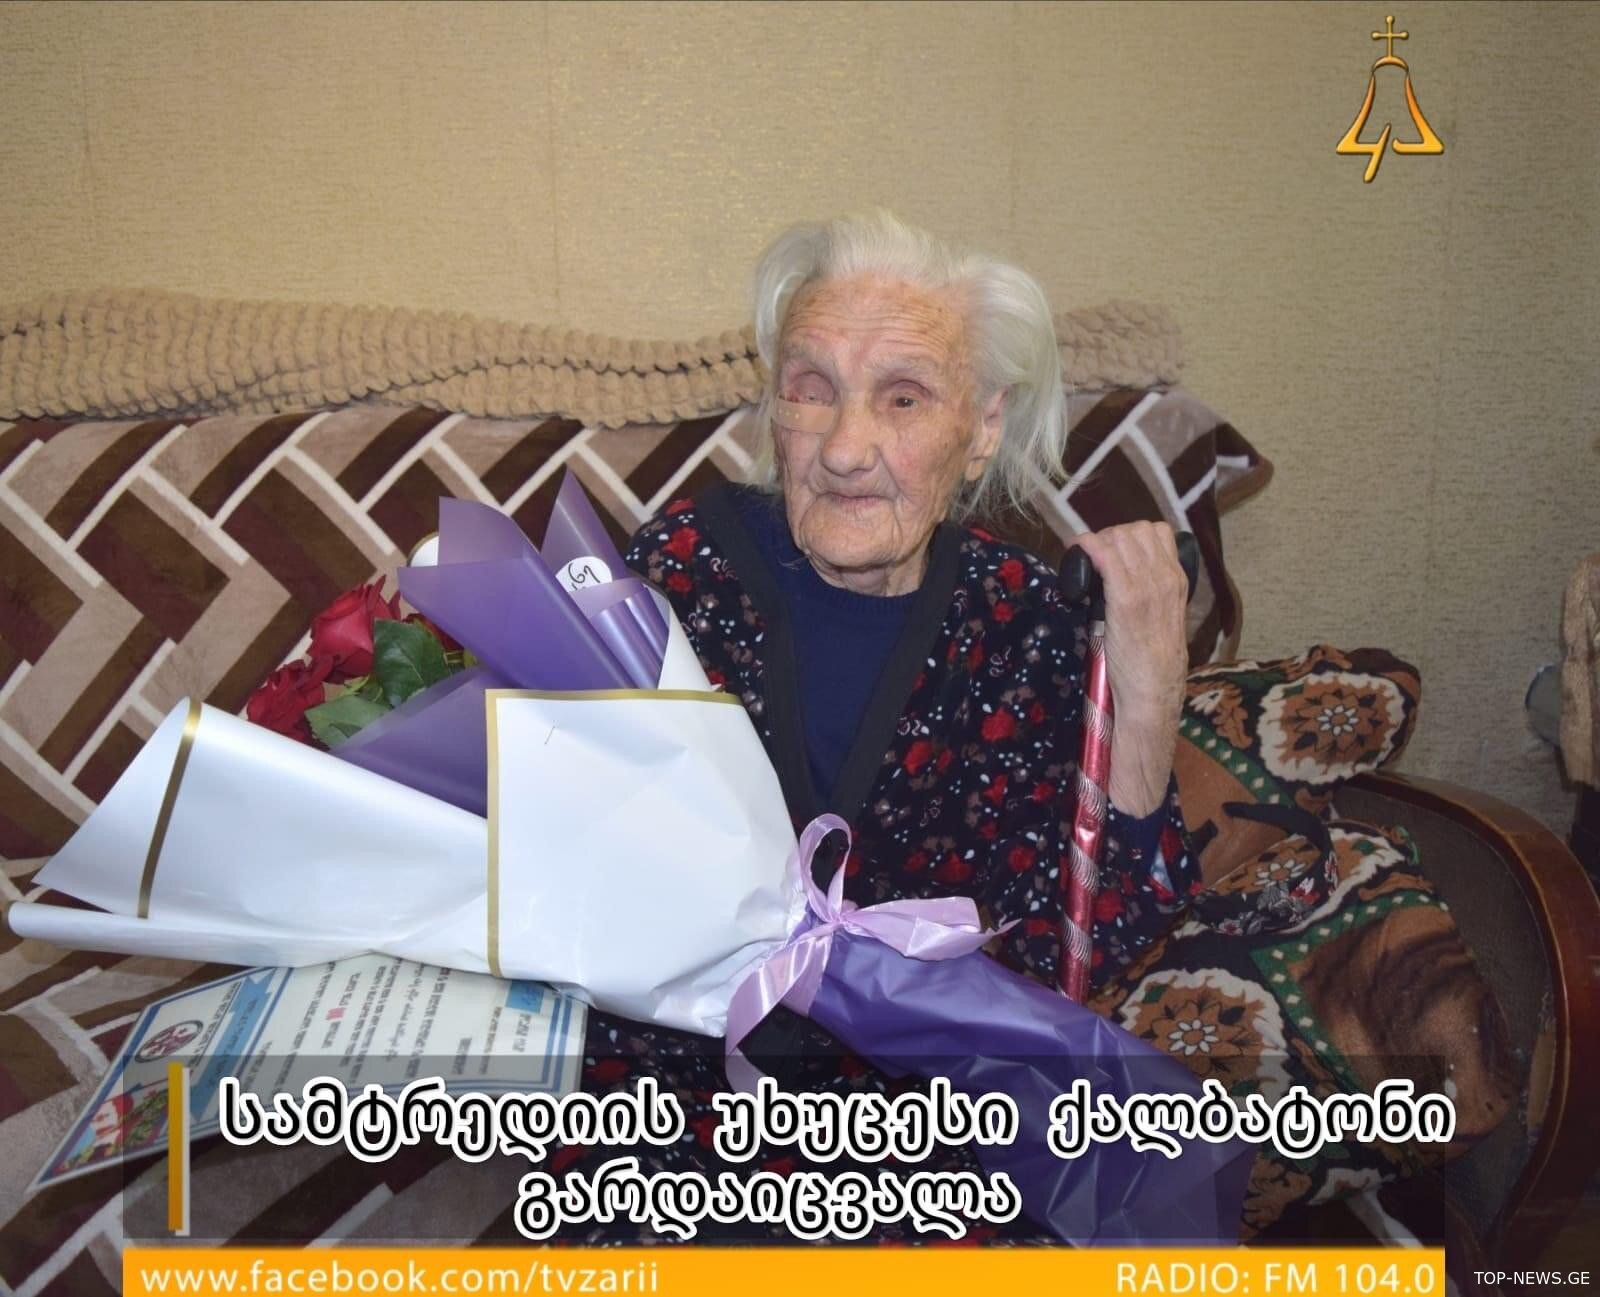 სამტრედიის უხუცესი ქალბატონი  101 წლის ასაკში გარდაიცვალა